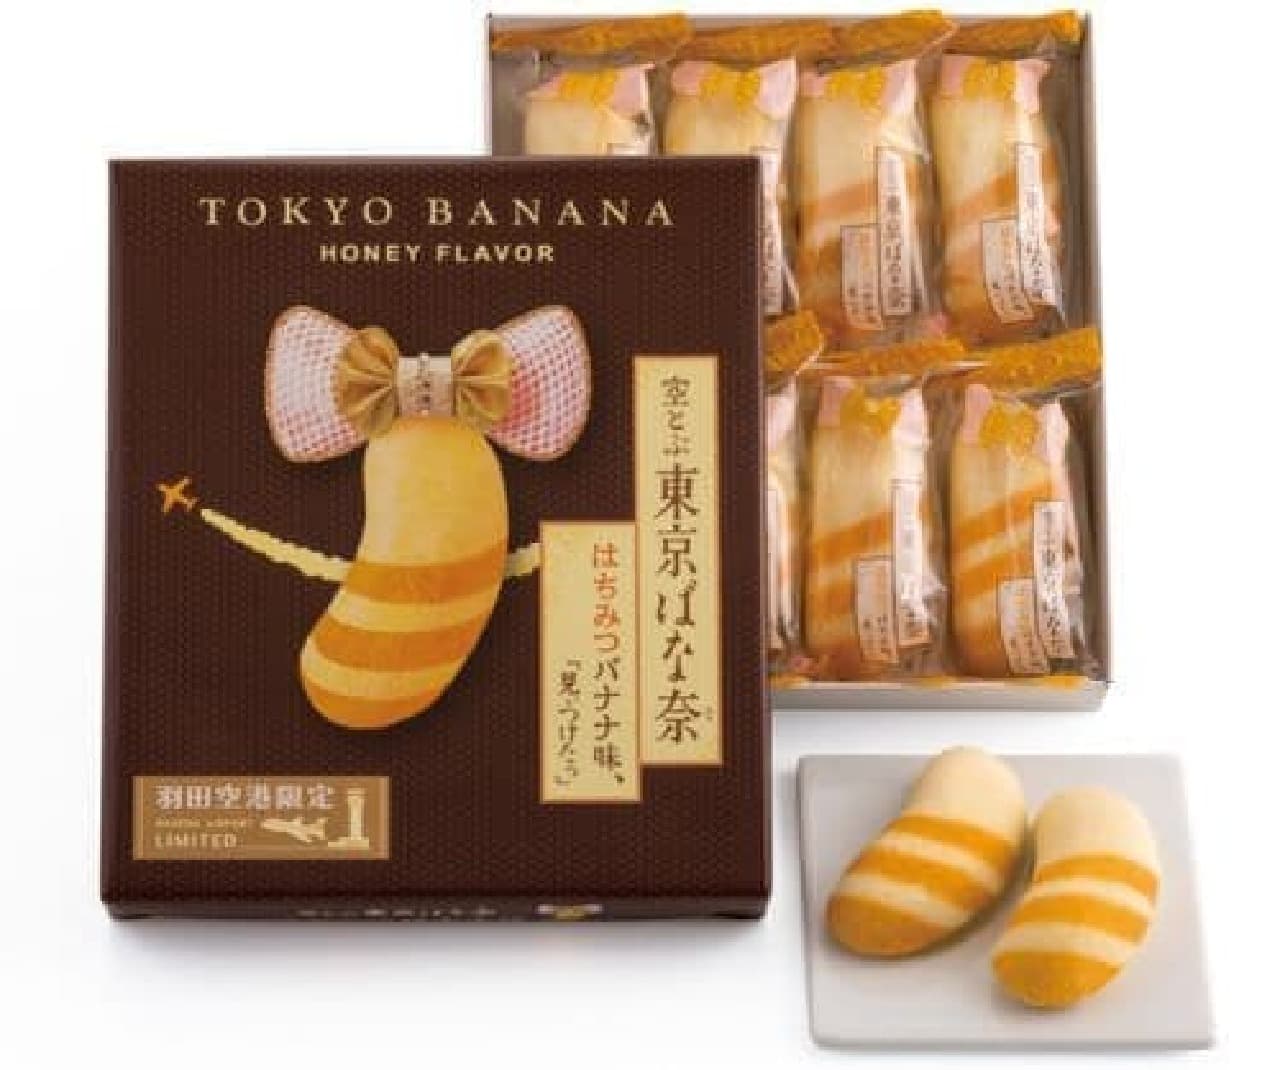 『空とぶ東京ばな奈 はちみつバナナ味、「見ぃつけたっ」』ははちみつバナナカスタードがスポンジケーキで包み込まれたお菓子